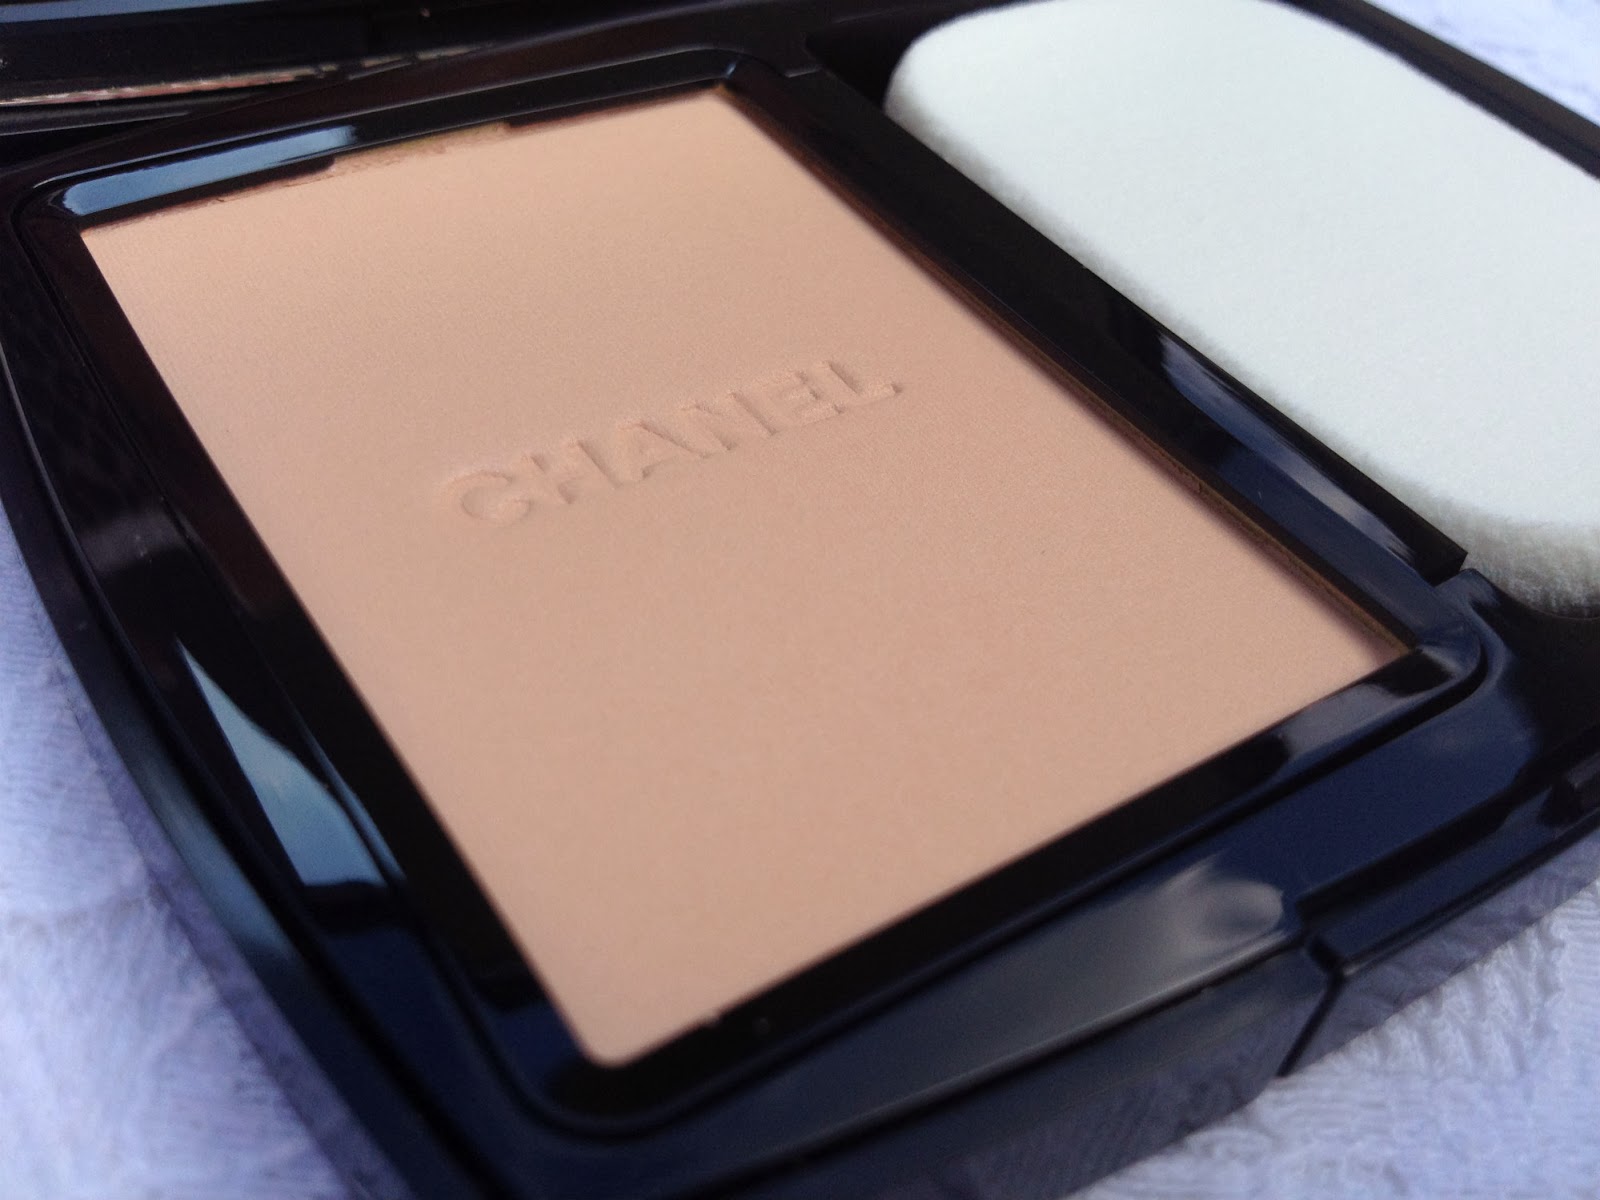 Chanel Vitalumiere Compact Douceur Lightweight Compact Makeup Spf 10 # 30 Beige  13G/0.45Oz